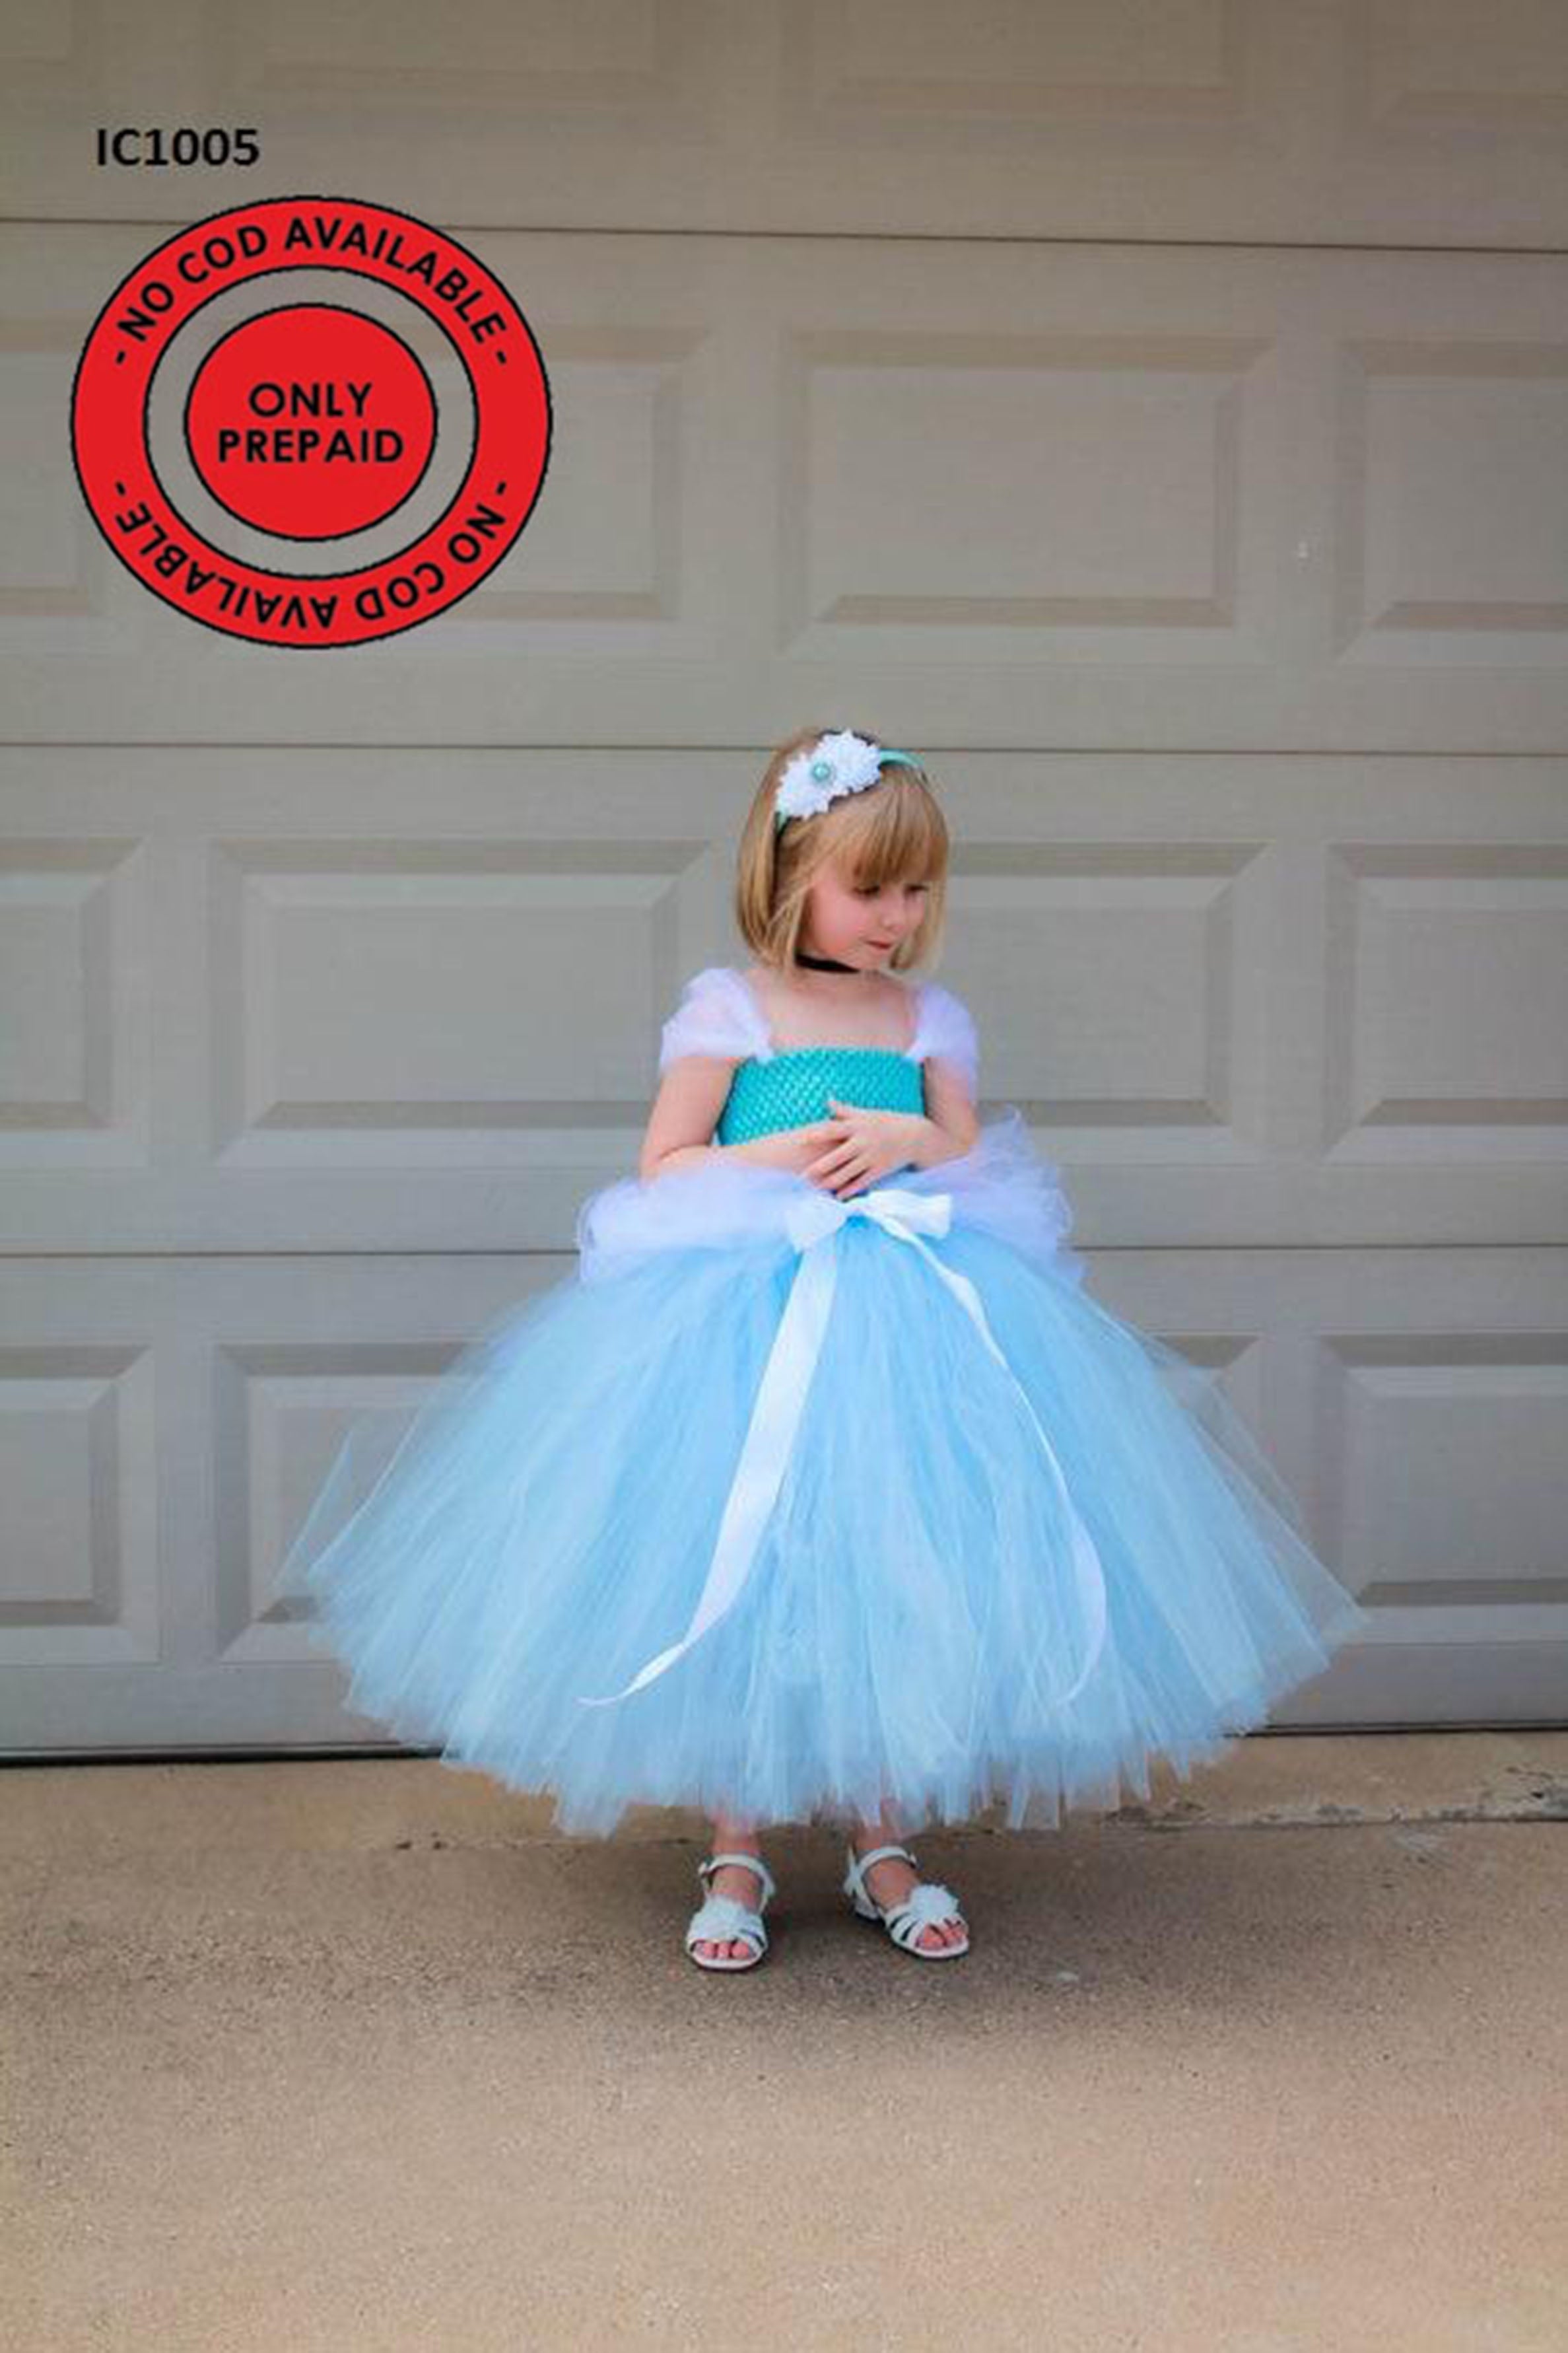 Frozen Elsa Inspired Costume for Girl, Elsa Birthday Party Dress - Etsy